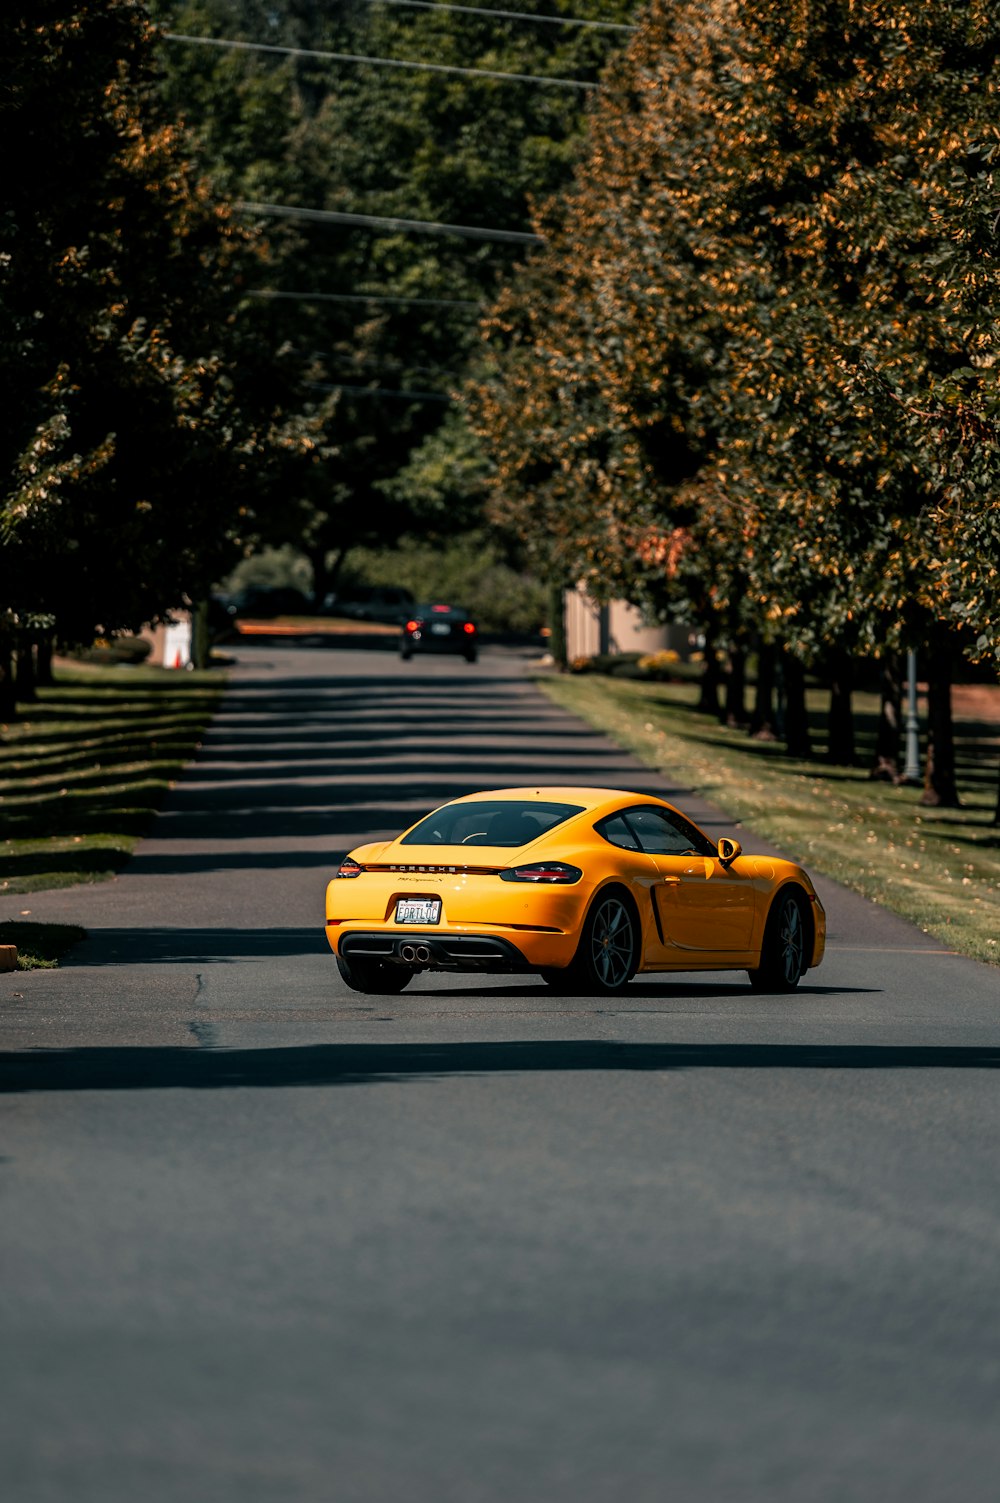 Gelber Porsche 911 tagsüber auf Gehweg geparkt